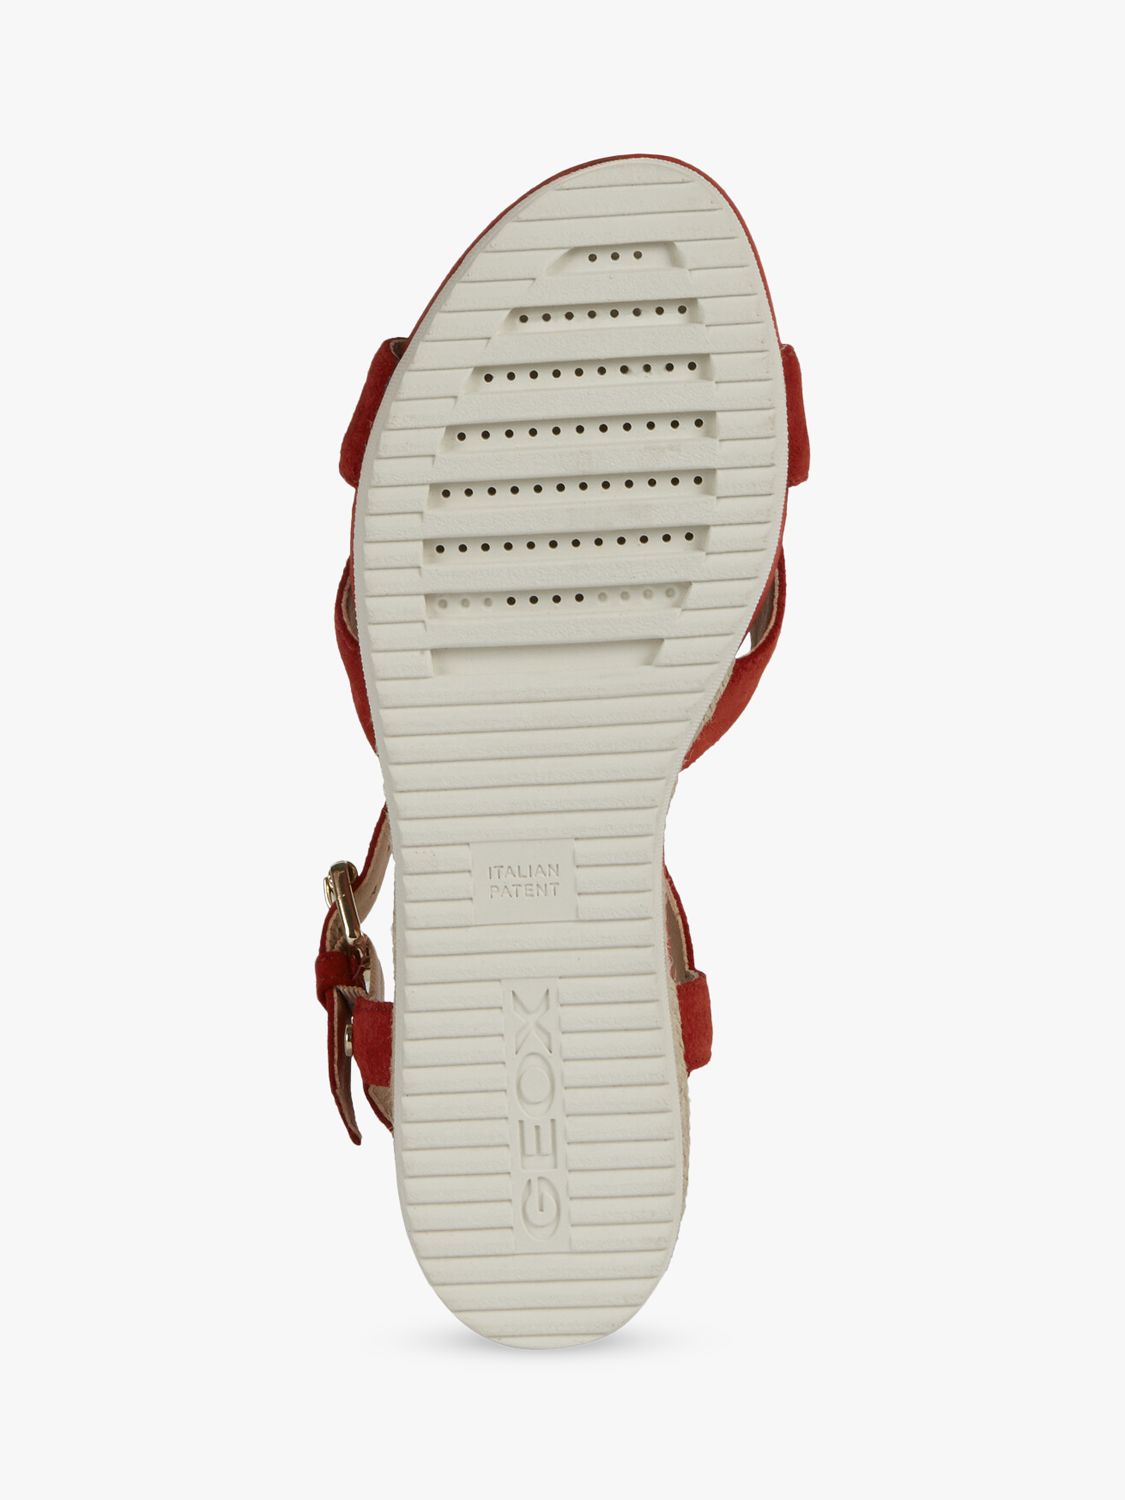 Buy Geox Women's Ischia Corda Suede Wedge Heel Sandals Online at johnlewis.com